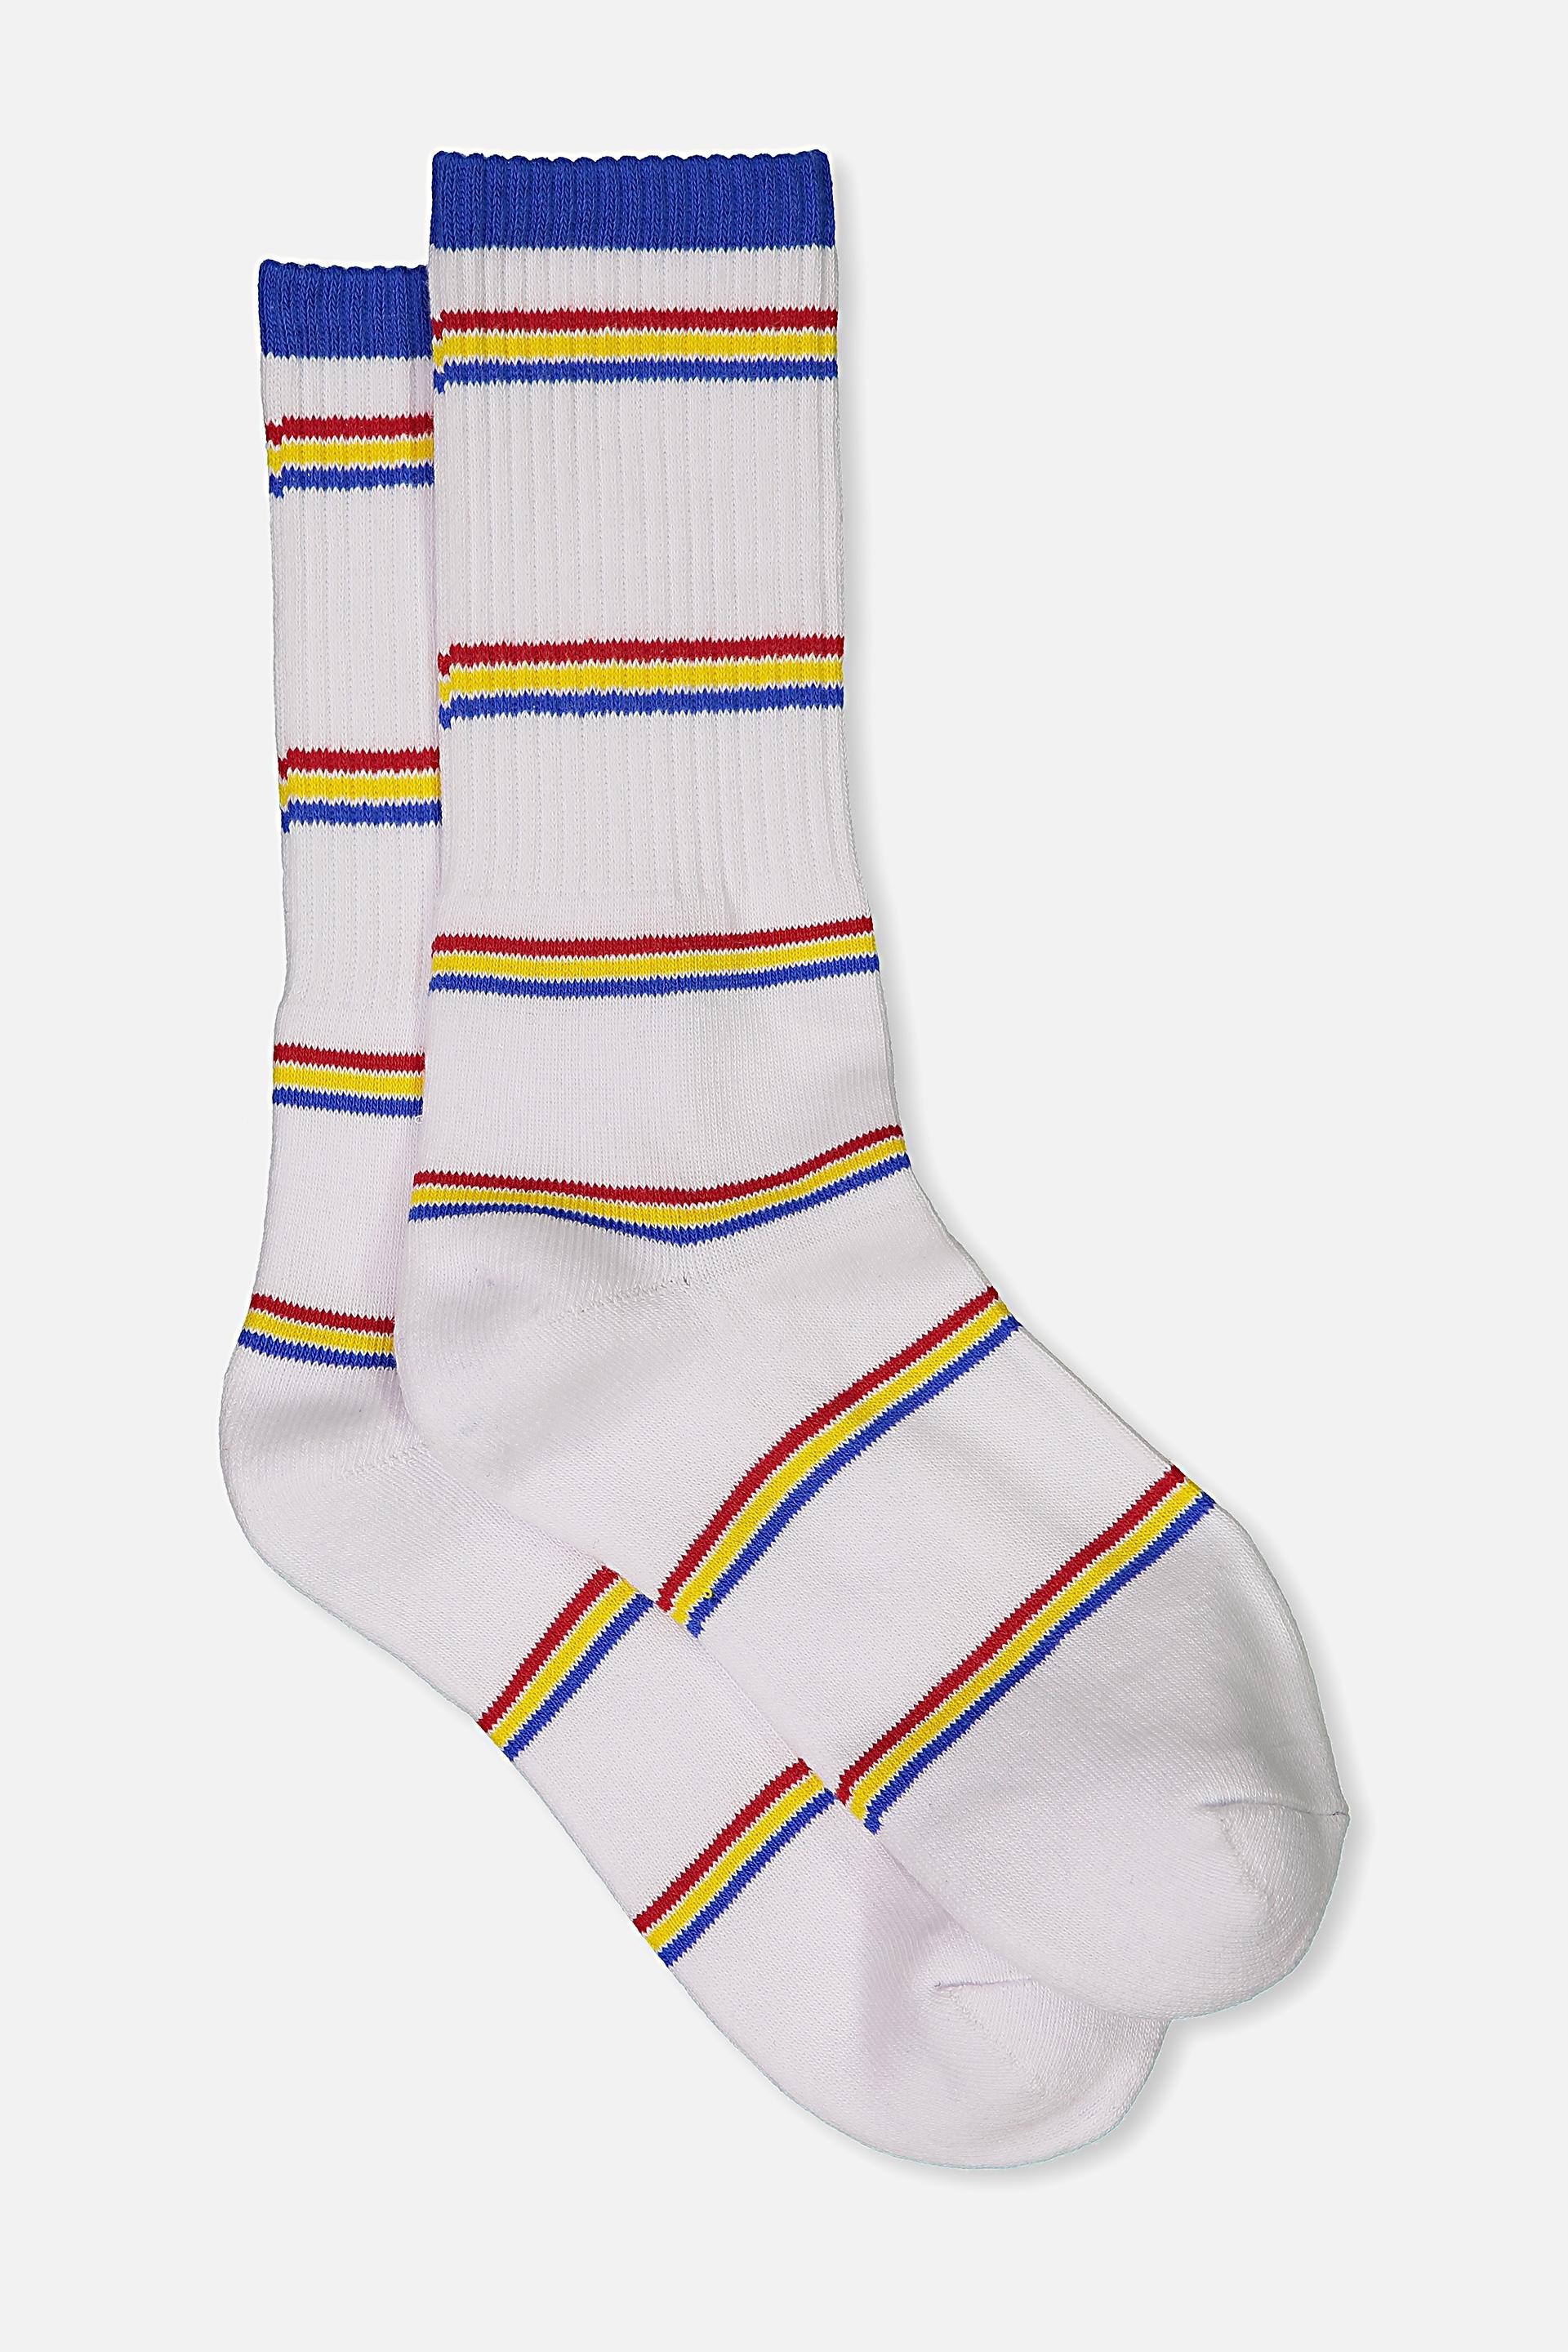 Single pack active socks - white/so Cal stripe Typo Socks | Superbalist.com